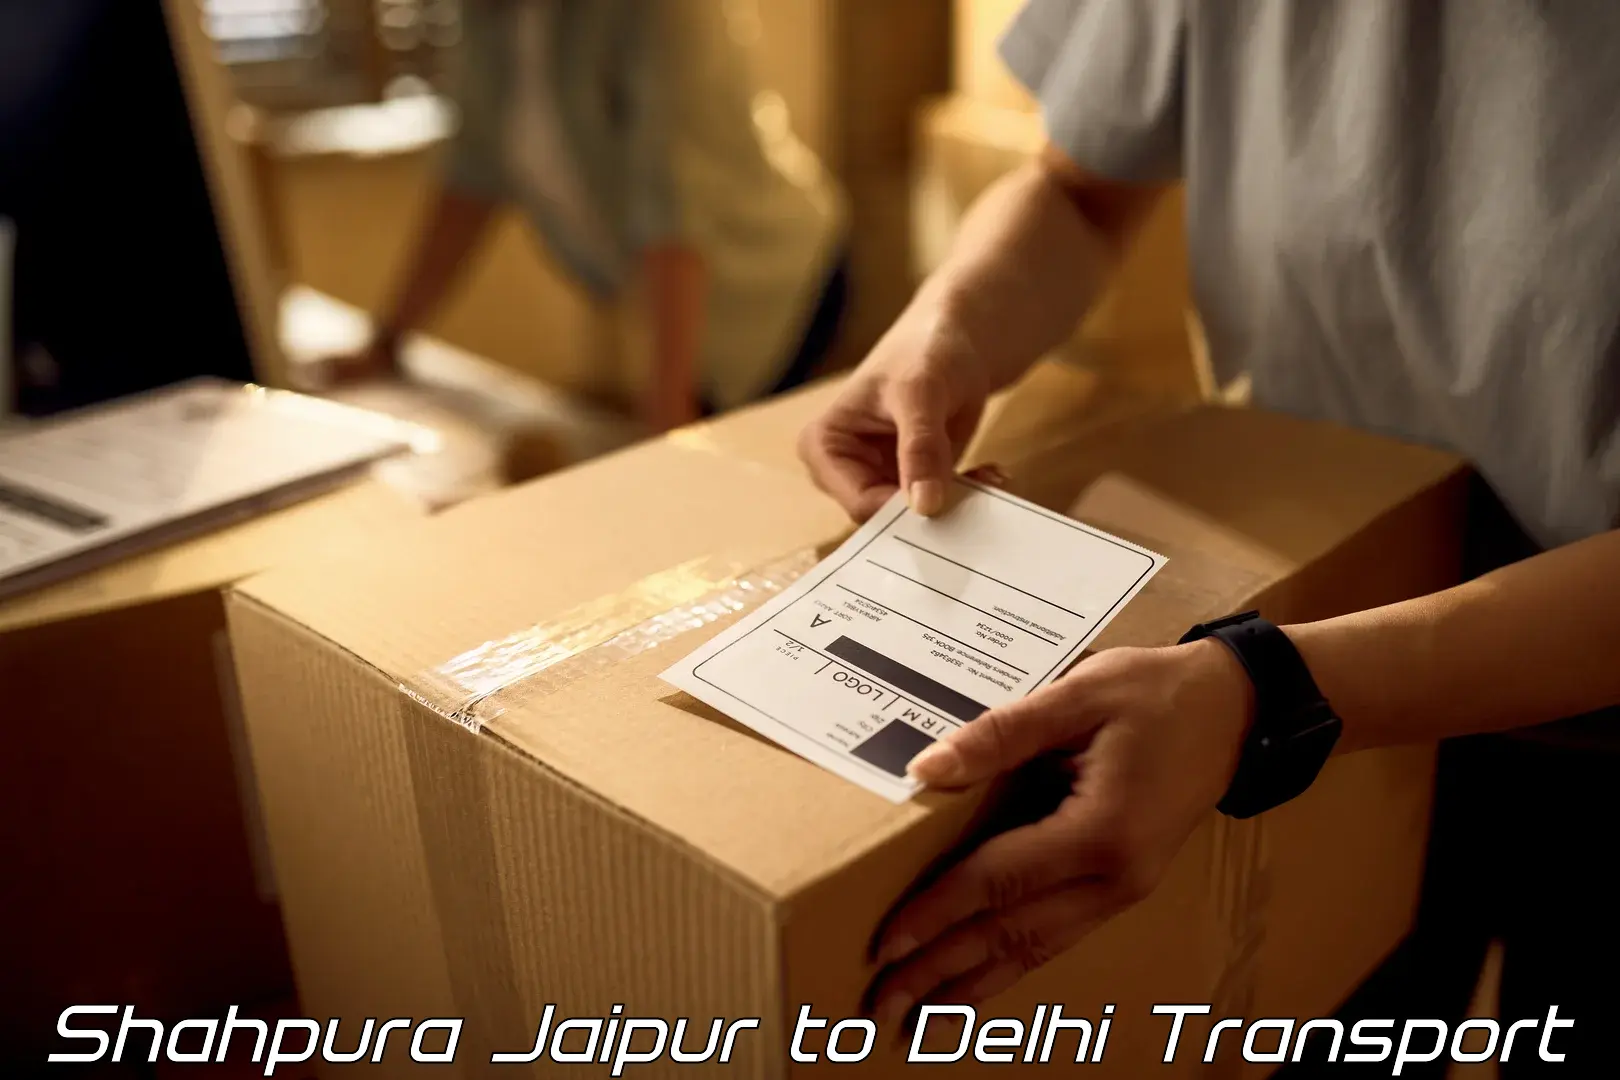 Transportation services Shahpura Jaipur to Krishna Nagar